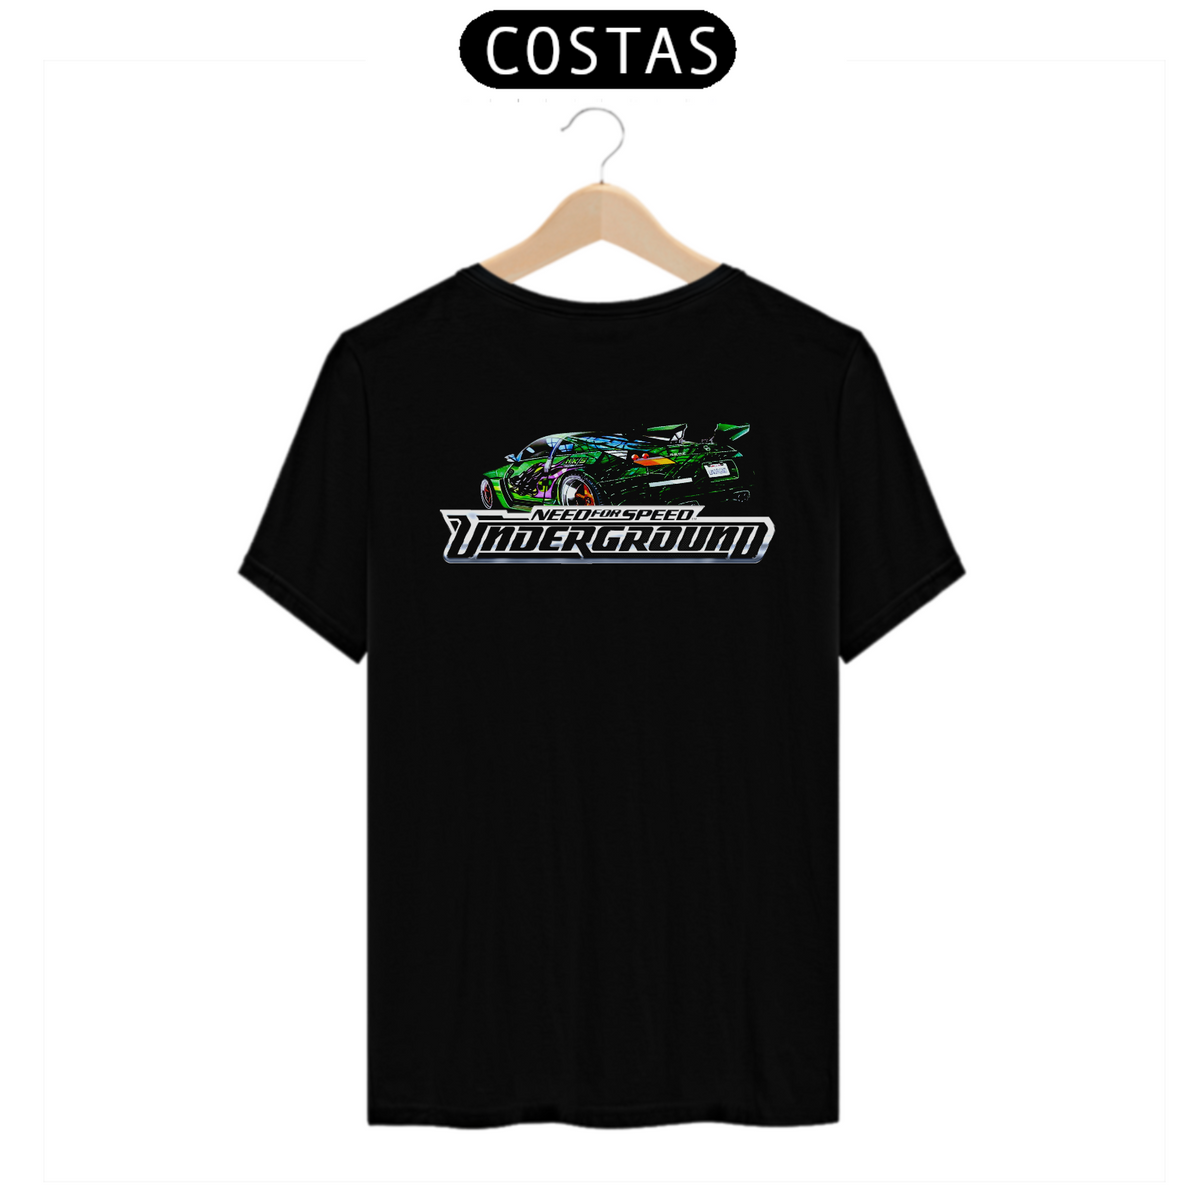 Nome do produto: Camiseta Quality NeedSpeed Costas